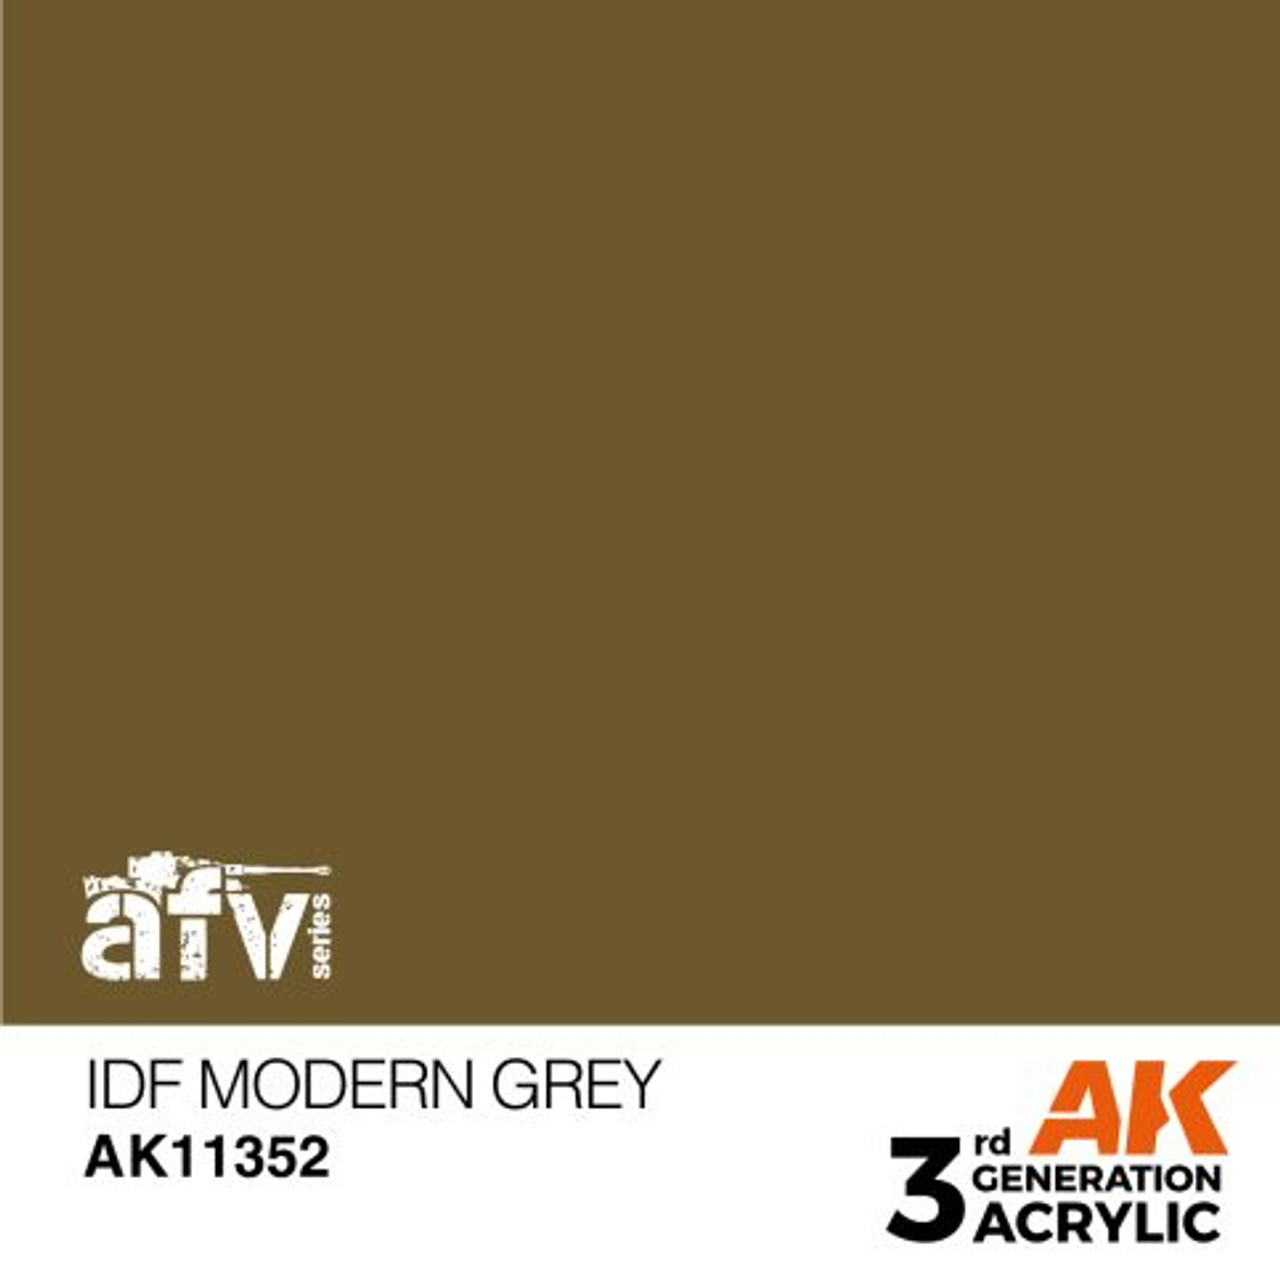 3G AFV 352 - IDF Modern Grey